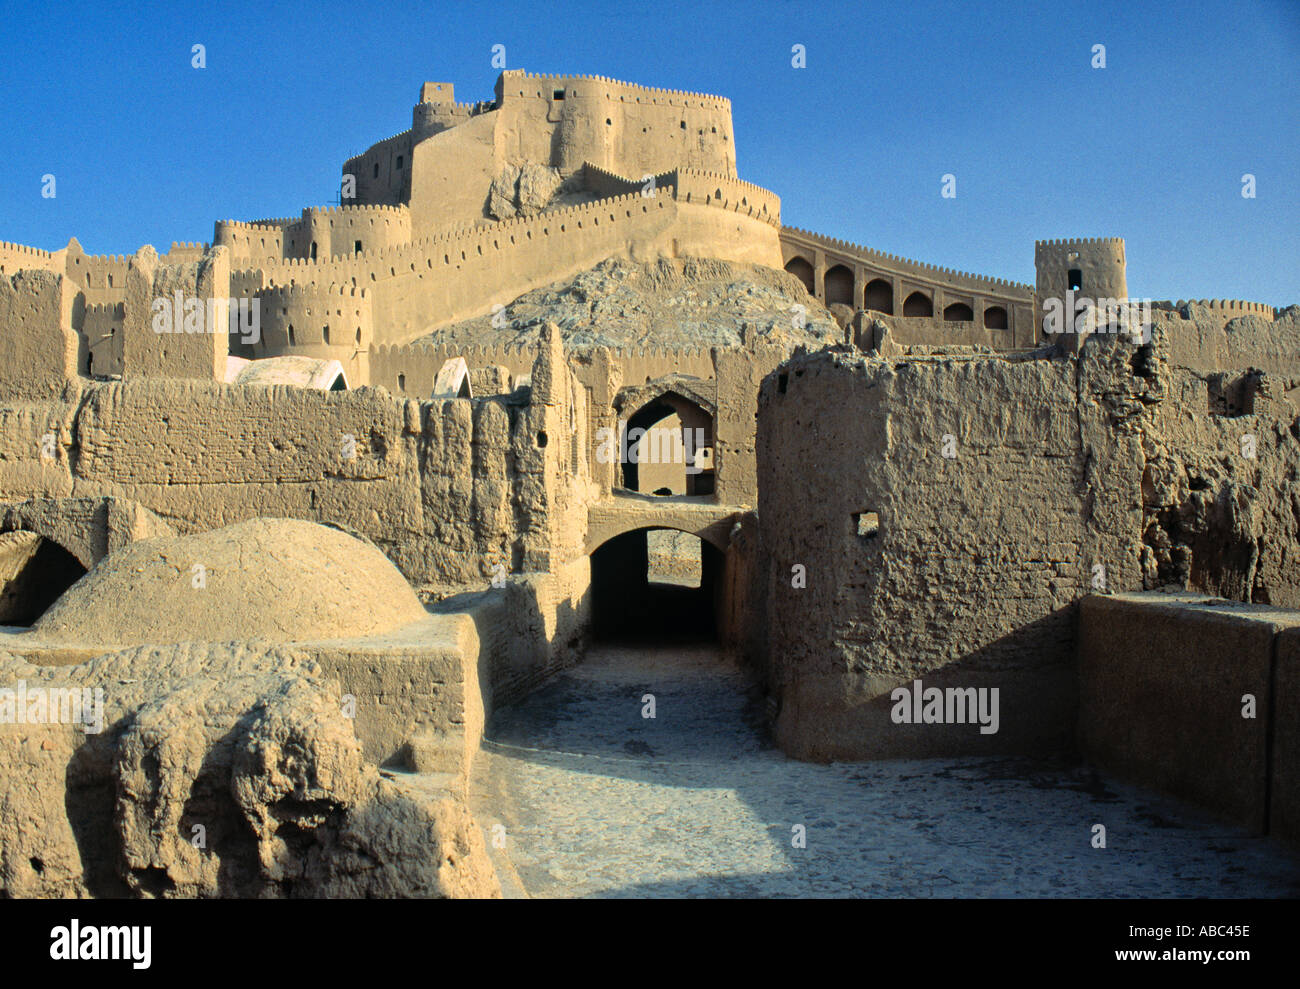 Arg-e Bam (Old Citadel), Bam, Iran Stock Photo